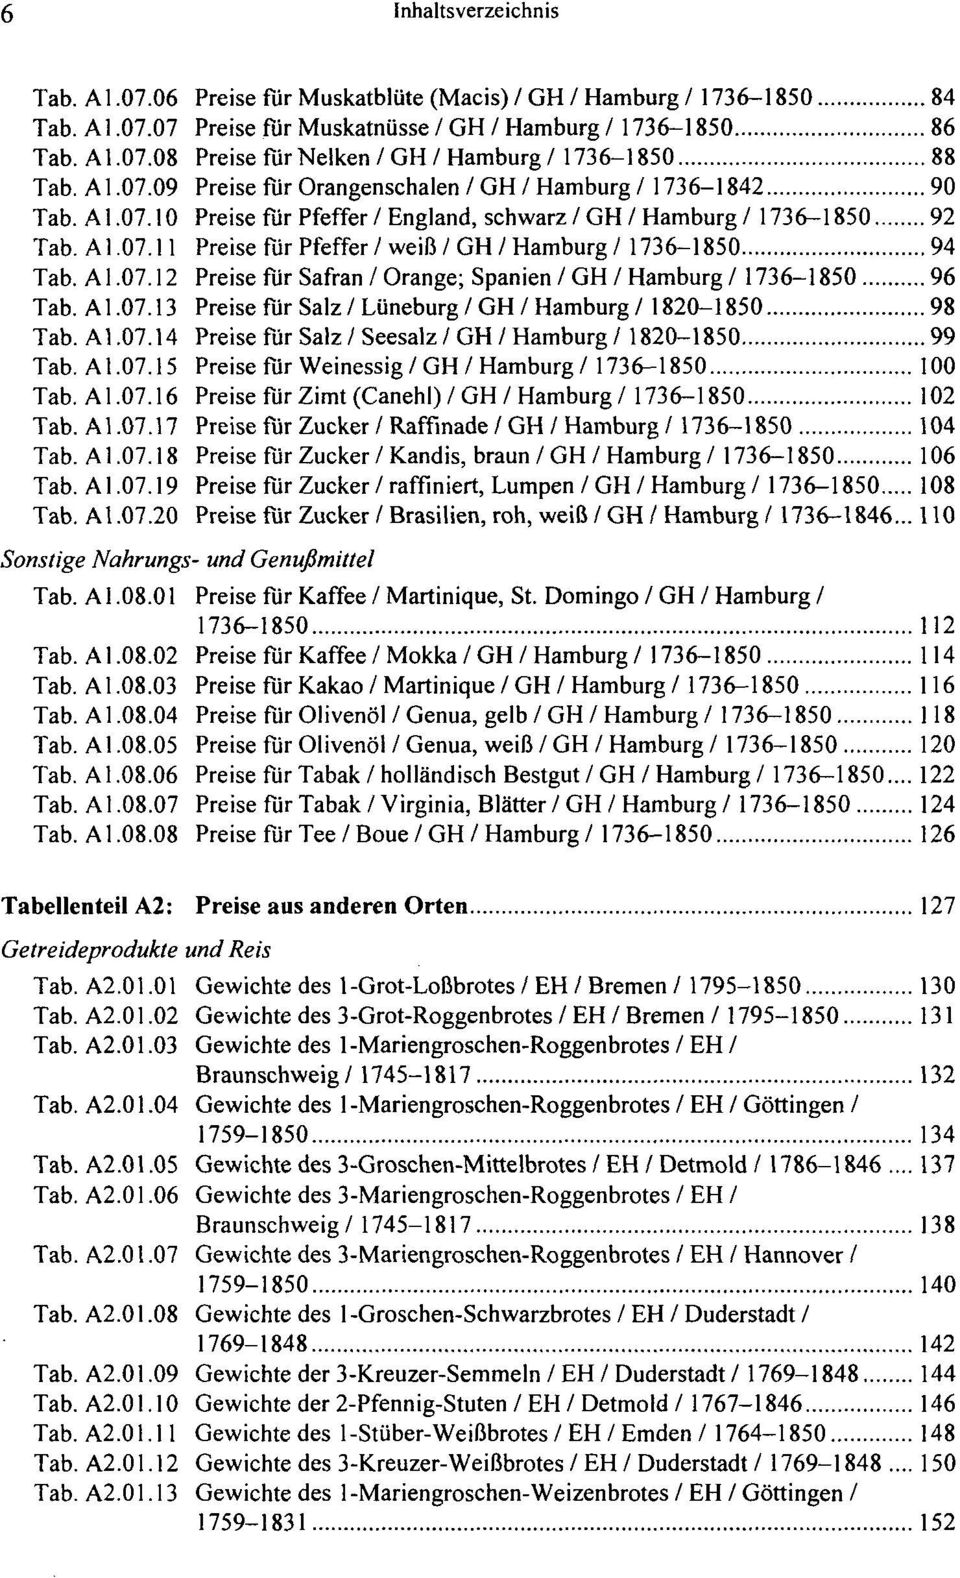 Al.07.12 Preise für Safran / Orange; Spanien / GH / Hamburg / 1736-1850 96 Tab. Al.07.13 Preise für Salz/Lüneburg/GH/Hamburg/1820-1850 98 Tab. Al.07.14 Preise für Salz / Seesalz / GH / Hamburg /1820-1850 99 Tab.